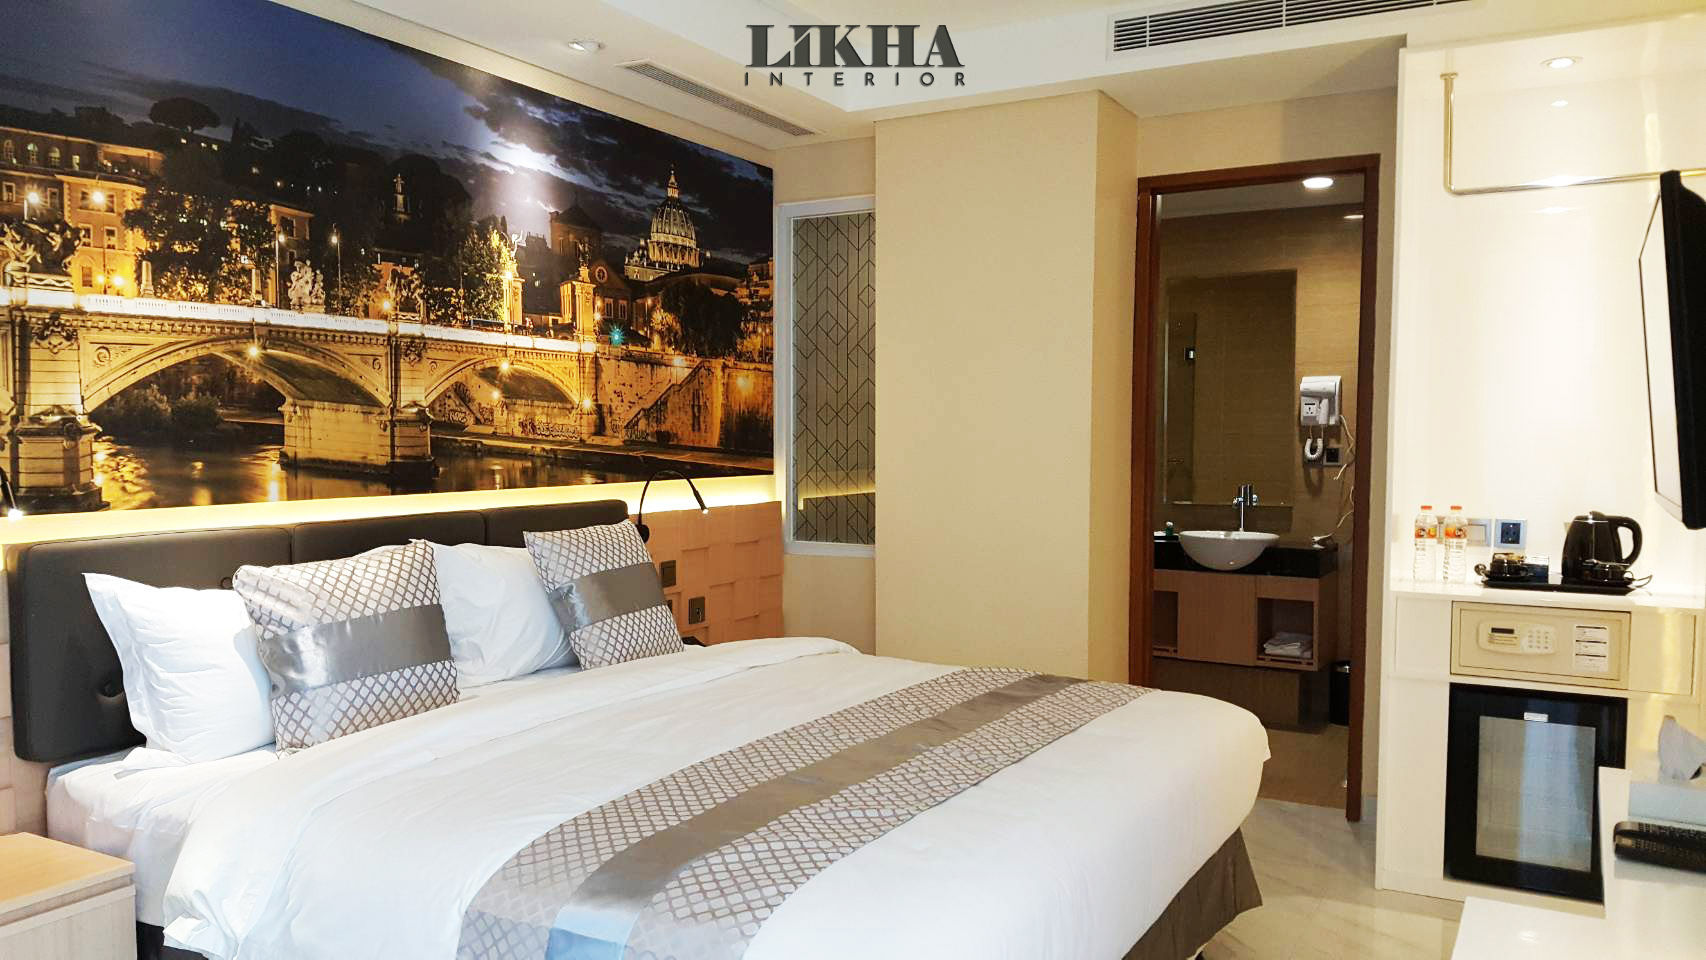 Tempat Tidur dengan Headboard yang Artistik Likha Interior Ruang Komersial Kayu Lapis interior design,desain interior,hotel,hotel room,kamar hotel,bedset,Hotels